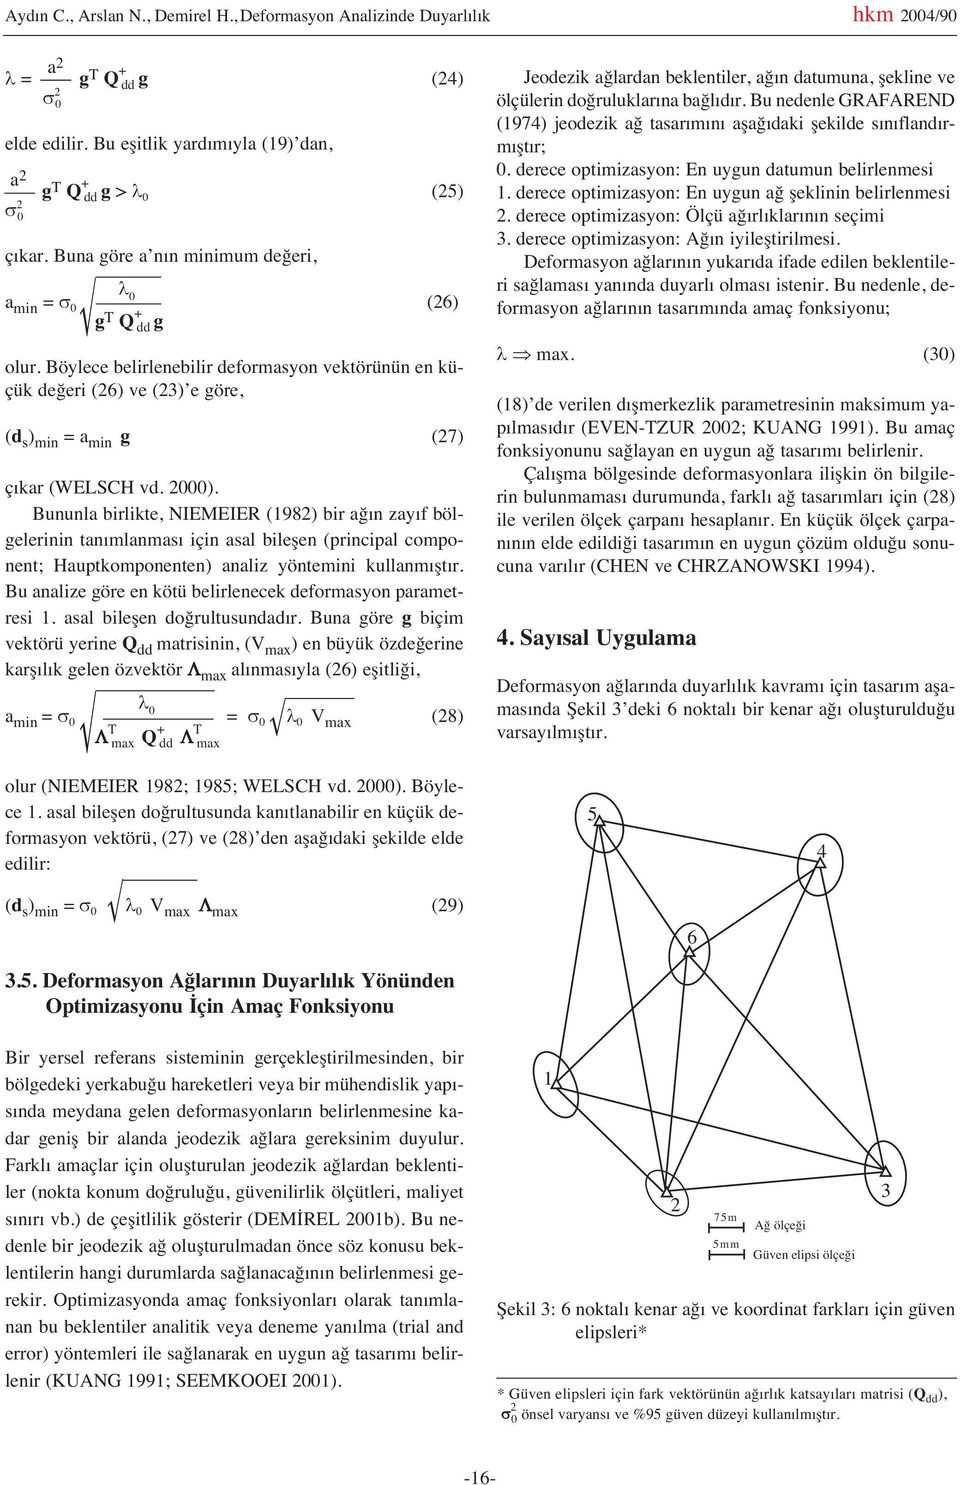 2000). Bununla birlikte, NIEMEIER (1982) bir ağ n zay f bölgelerinin tan mlanmas için asal bileşen (principal component; Hauptkomponenten) analiz yöntemini kullanm şt r.